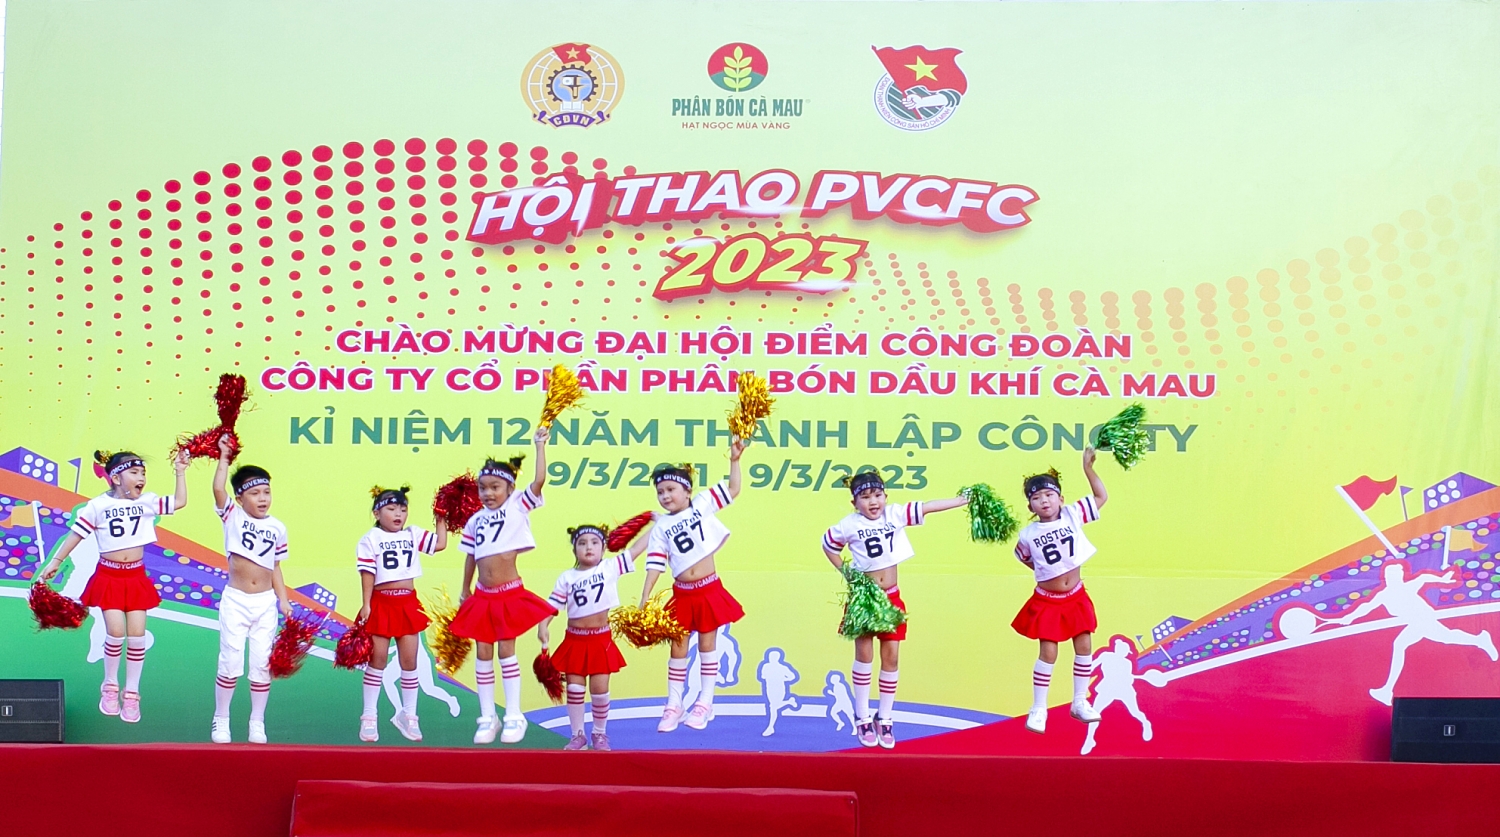 Hội thao PVCFC năm 2023: Khai mạc hoành tráng và đầy hứng khởi